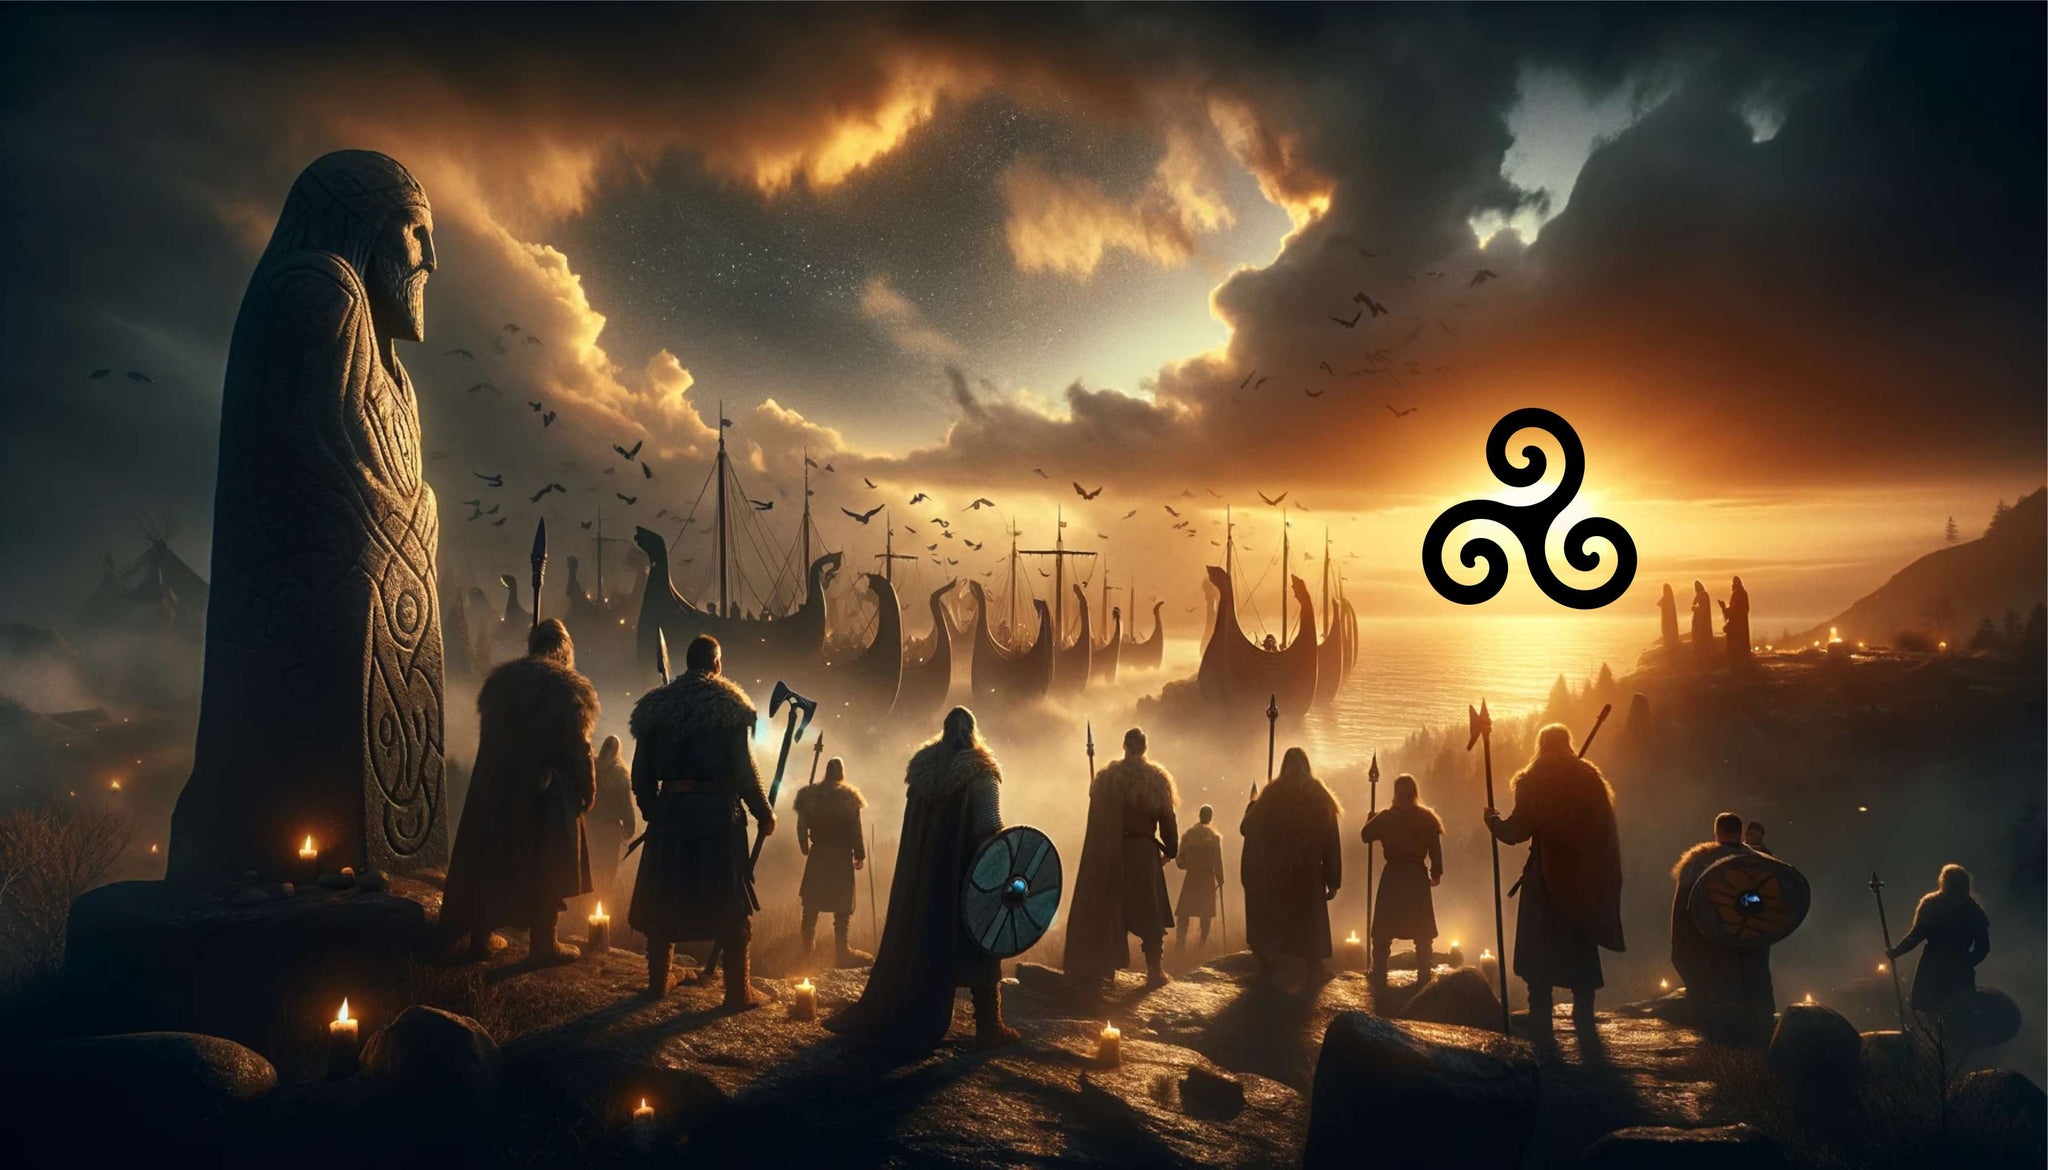 Voici une illustration représentant le crépuscule de l'ère viking, avec le triskel en témoin silencieux de cette transition historique.